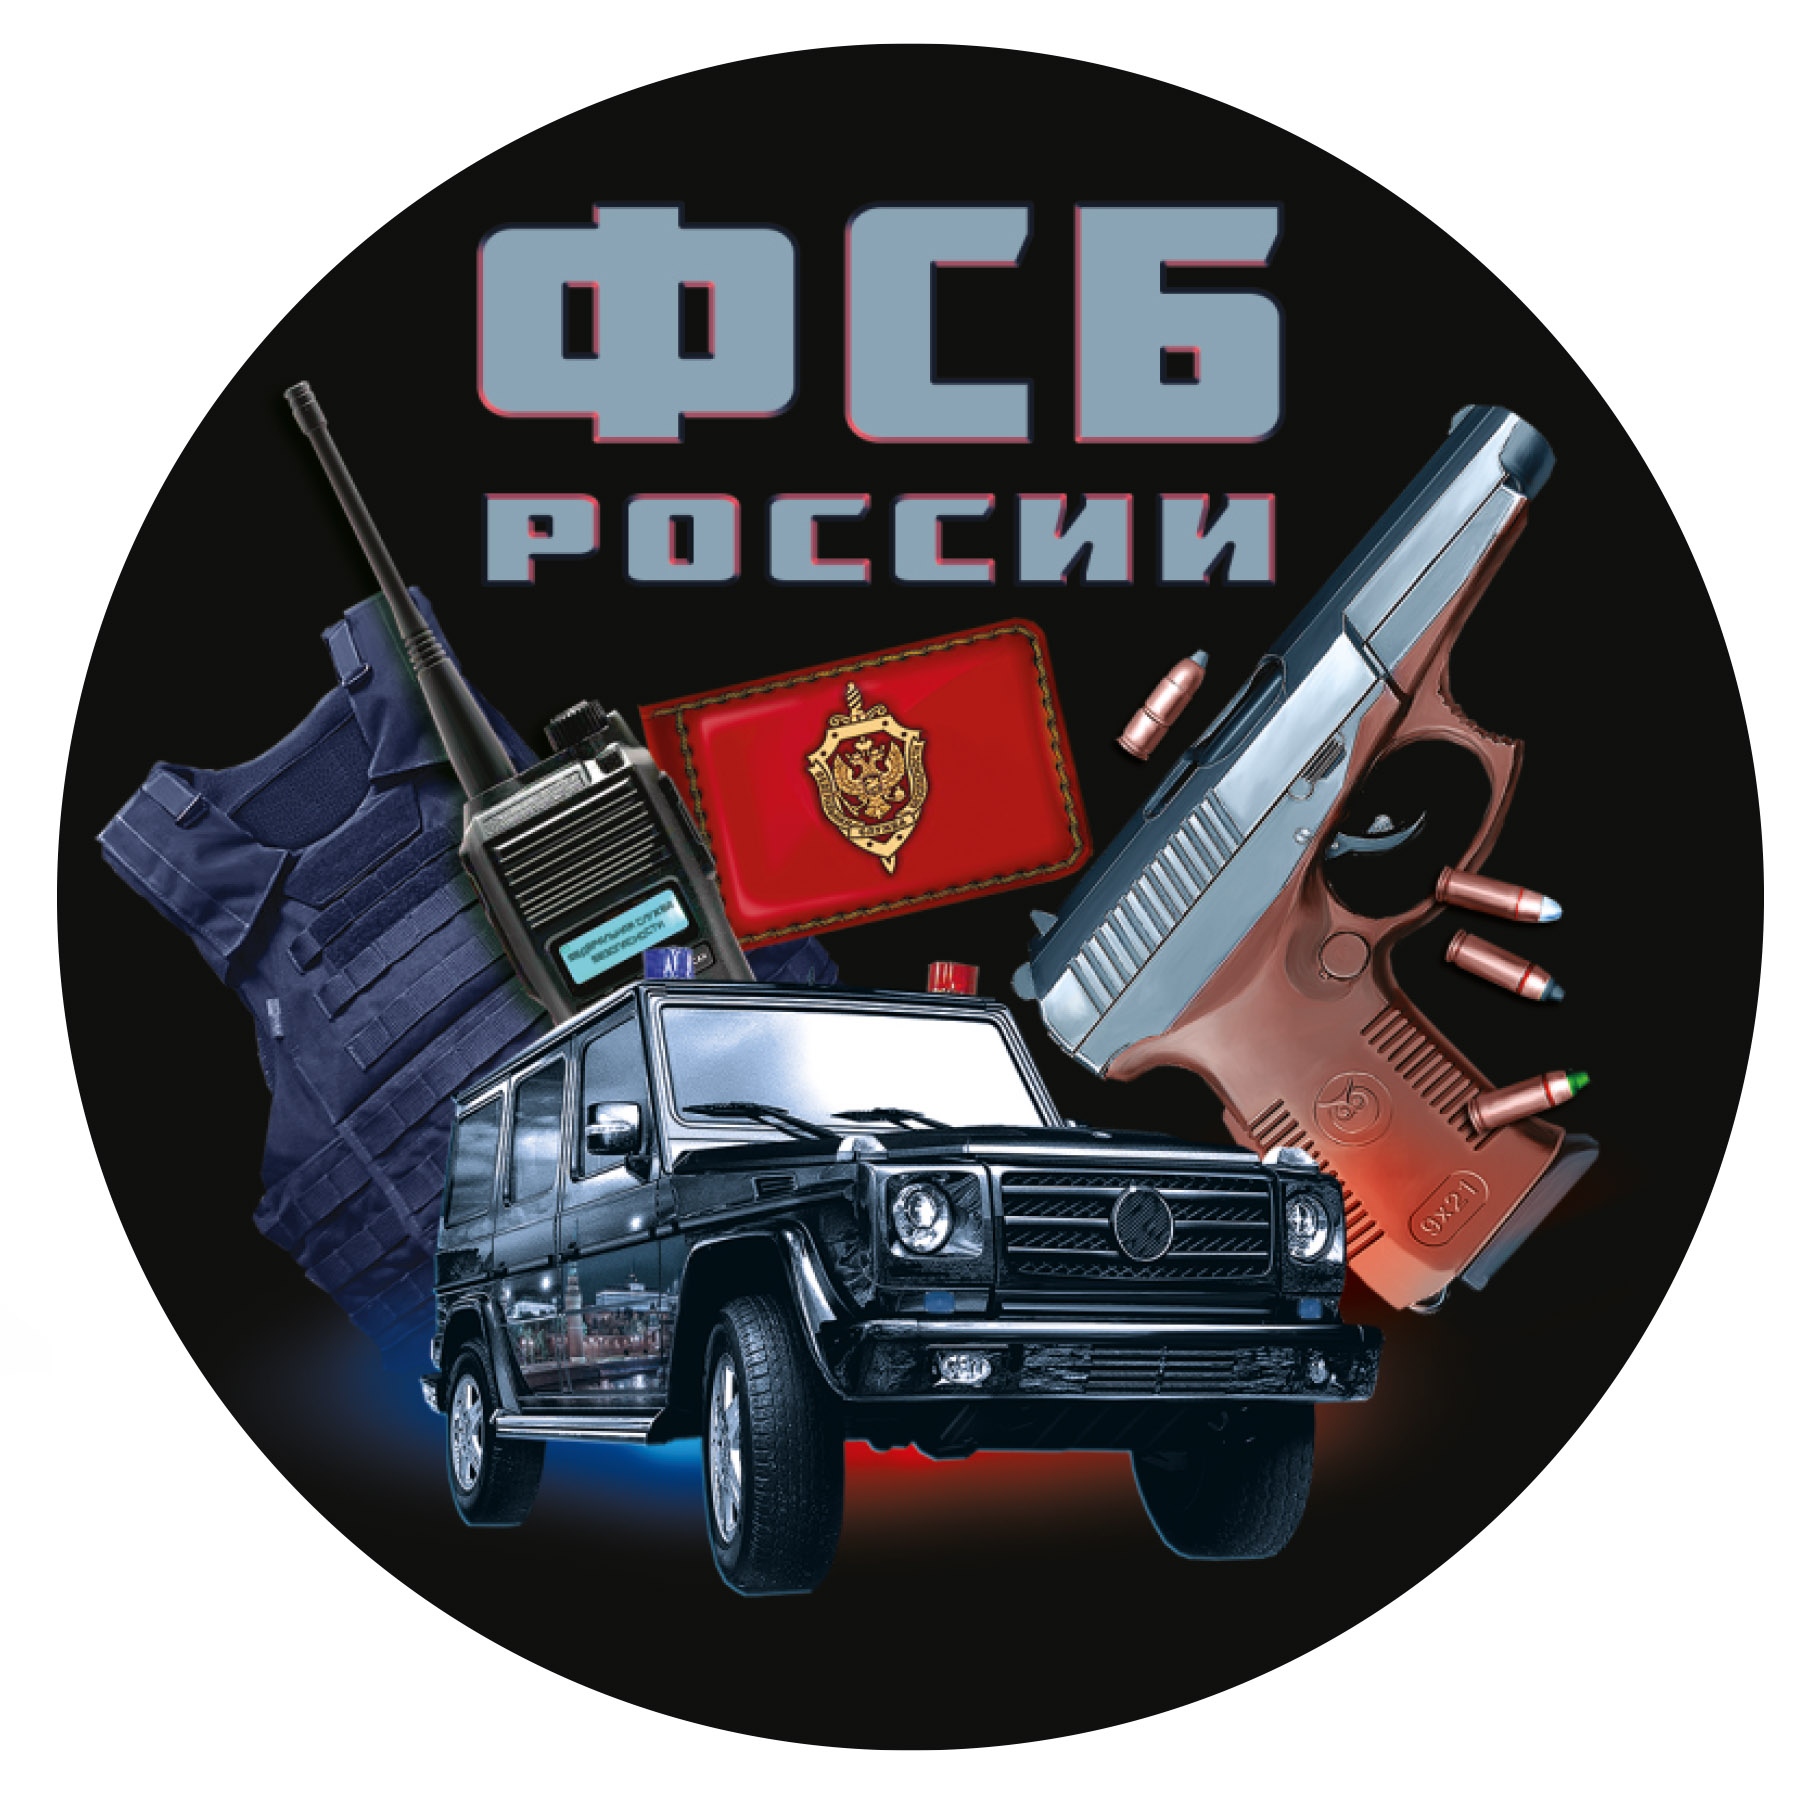 Тематическая наклейка ФСБ России недорого в Военпро